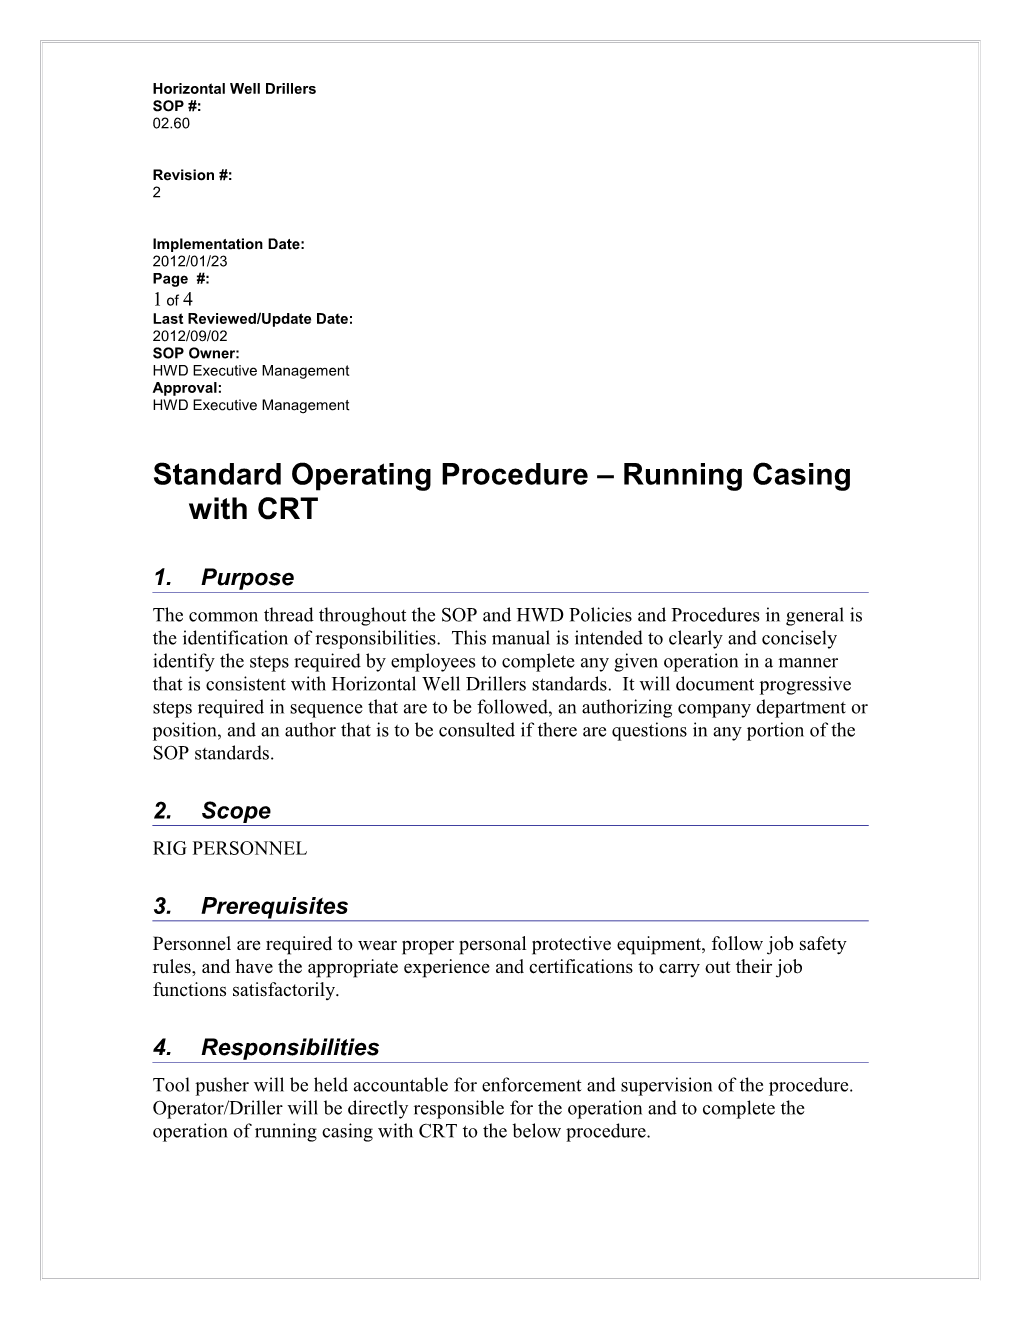 Standard Operating Procedure s27